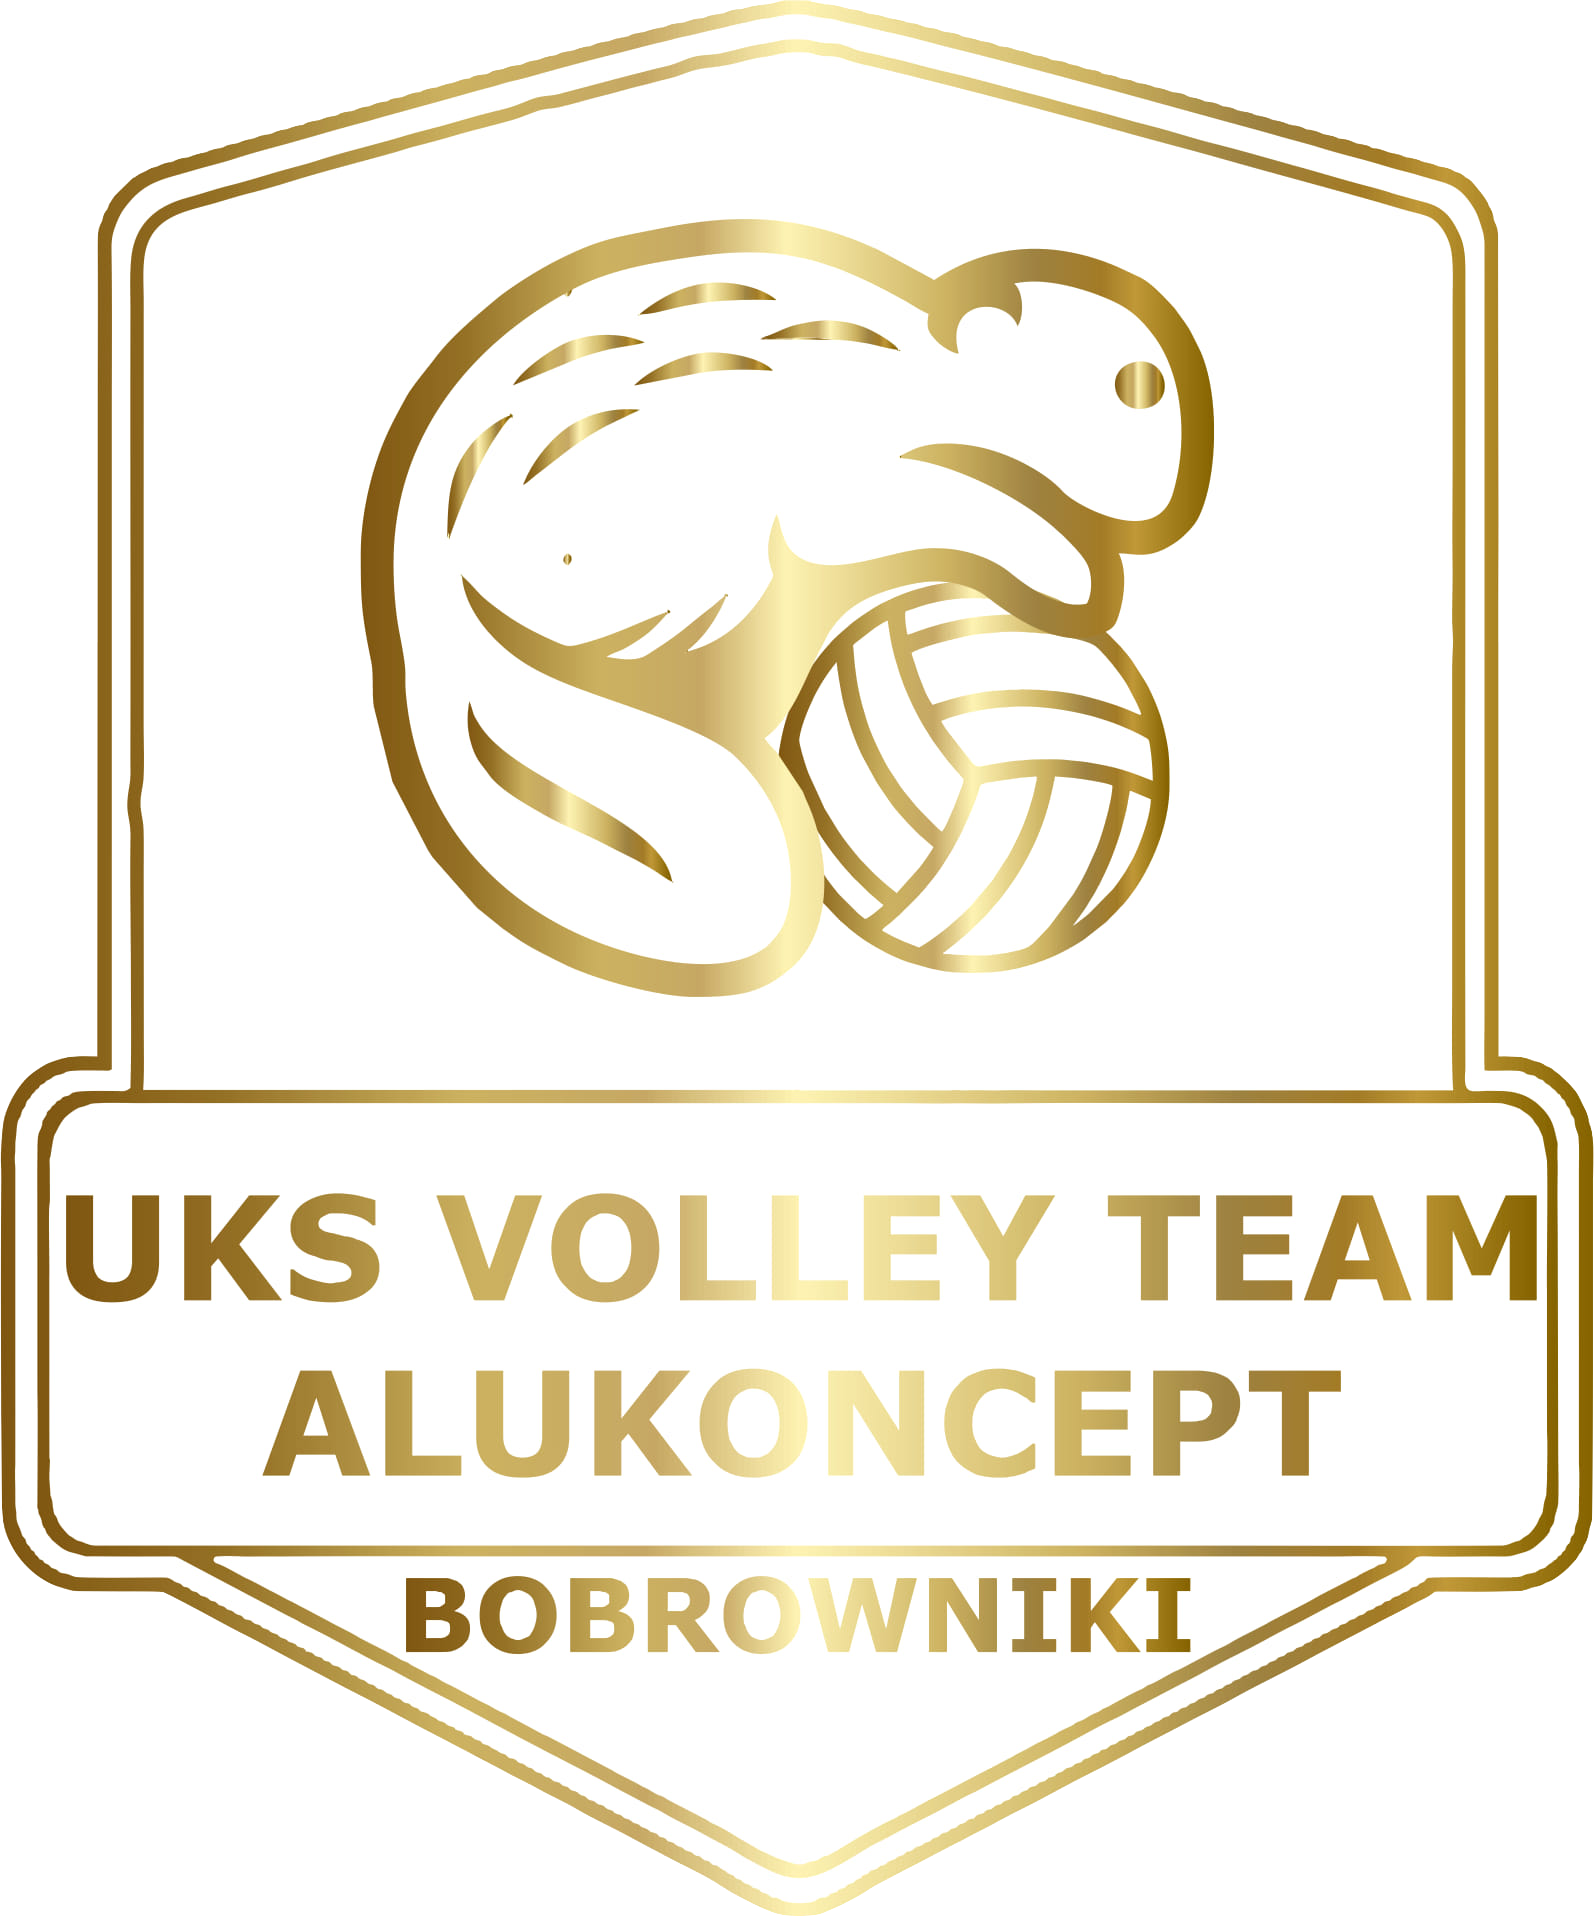 UKS VT Alukoncept Bobrowniki Logo